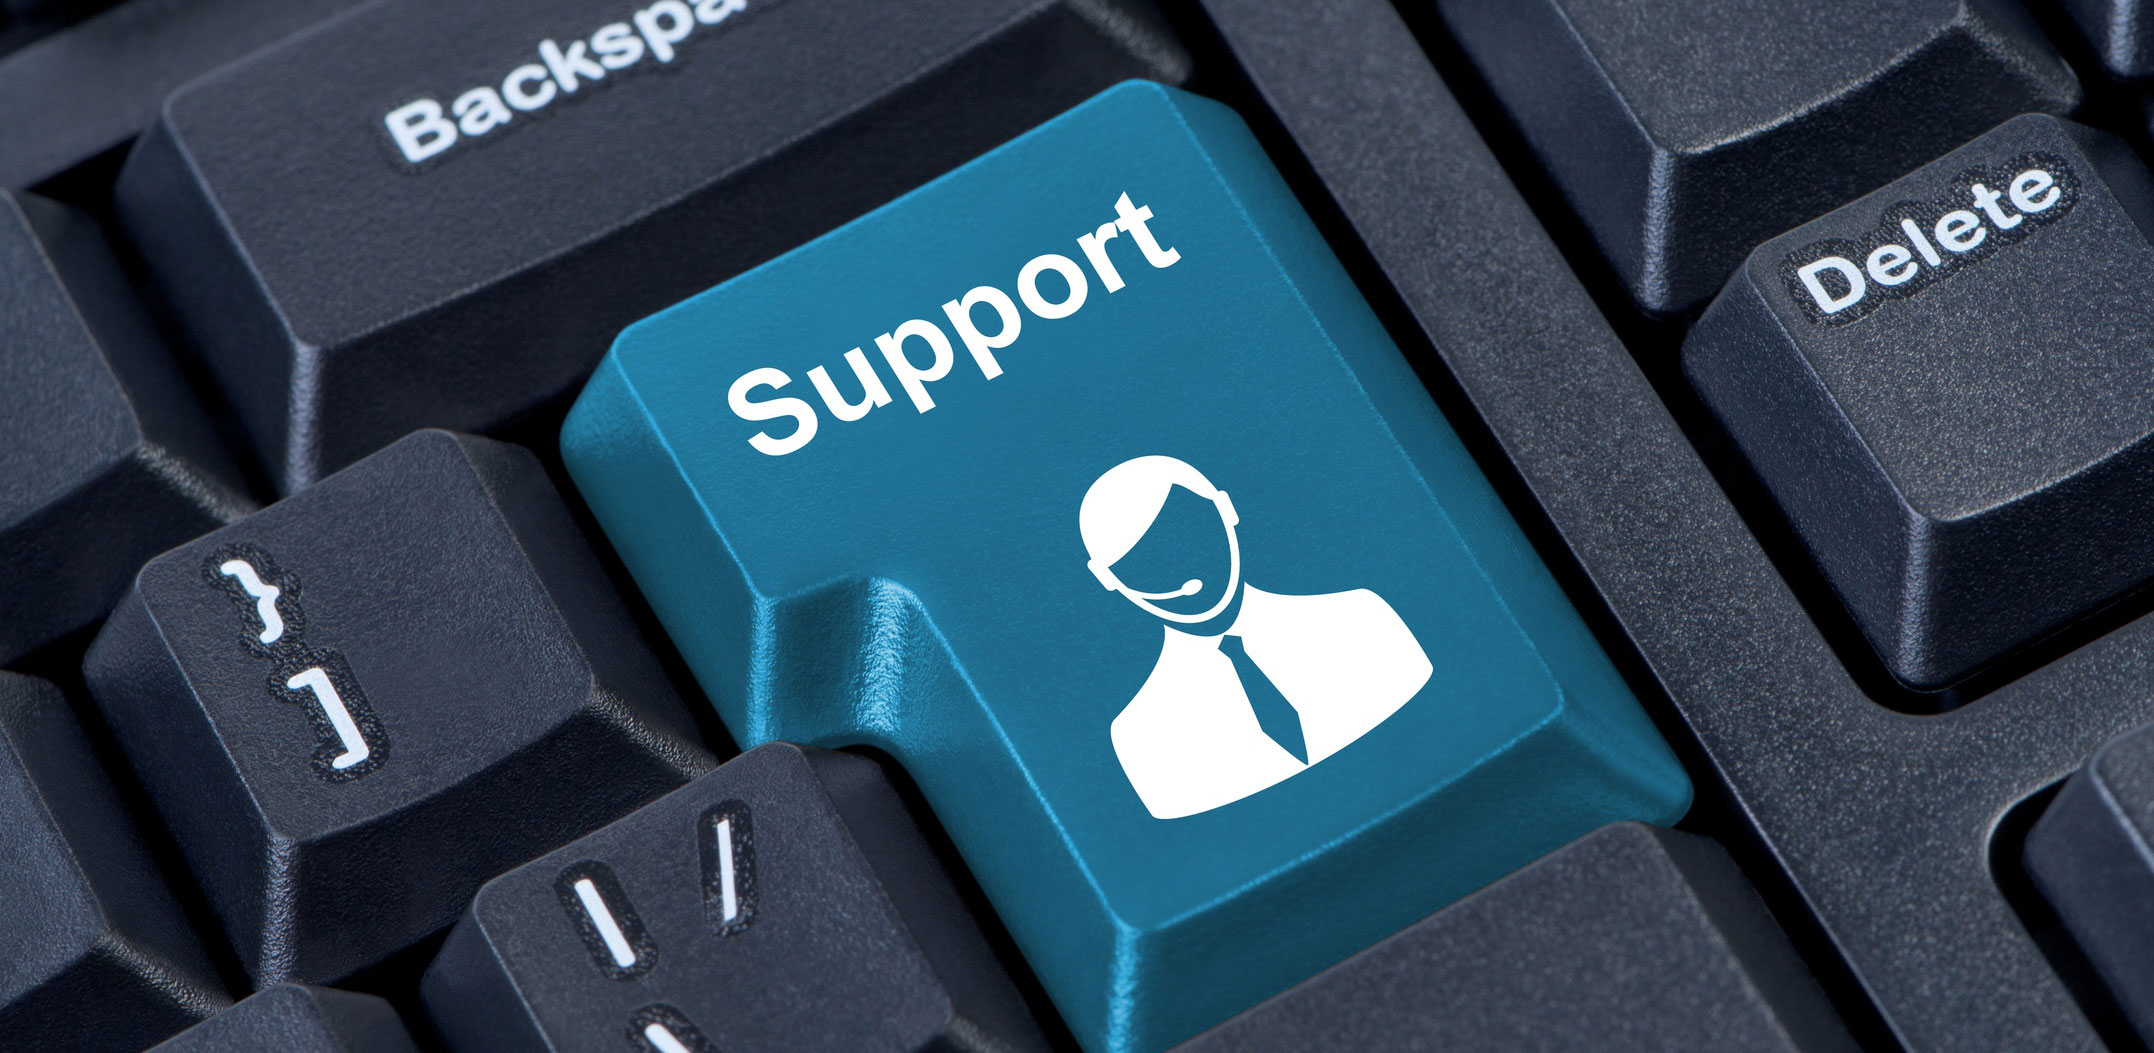 Support s com. Техническая поддержка. It поддержка. Техподдержка картинка. Поддержка сайта.